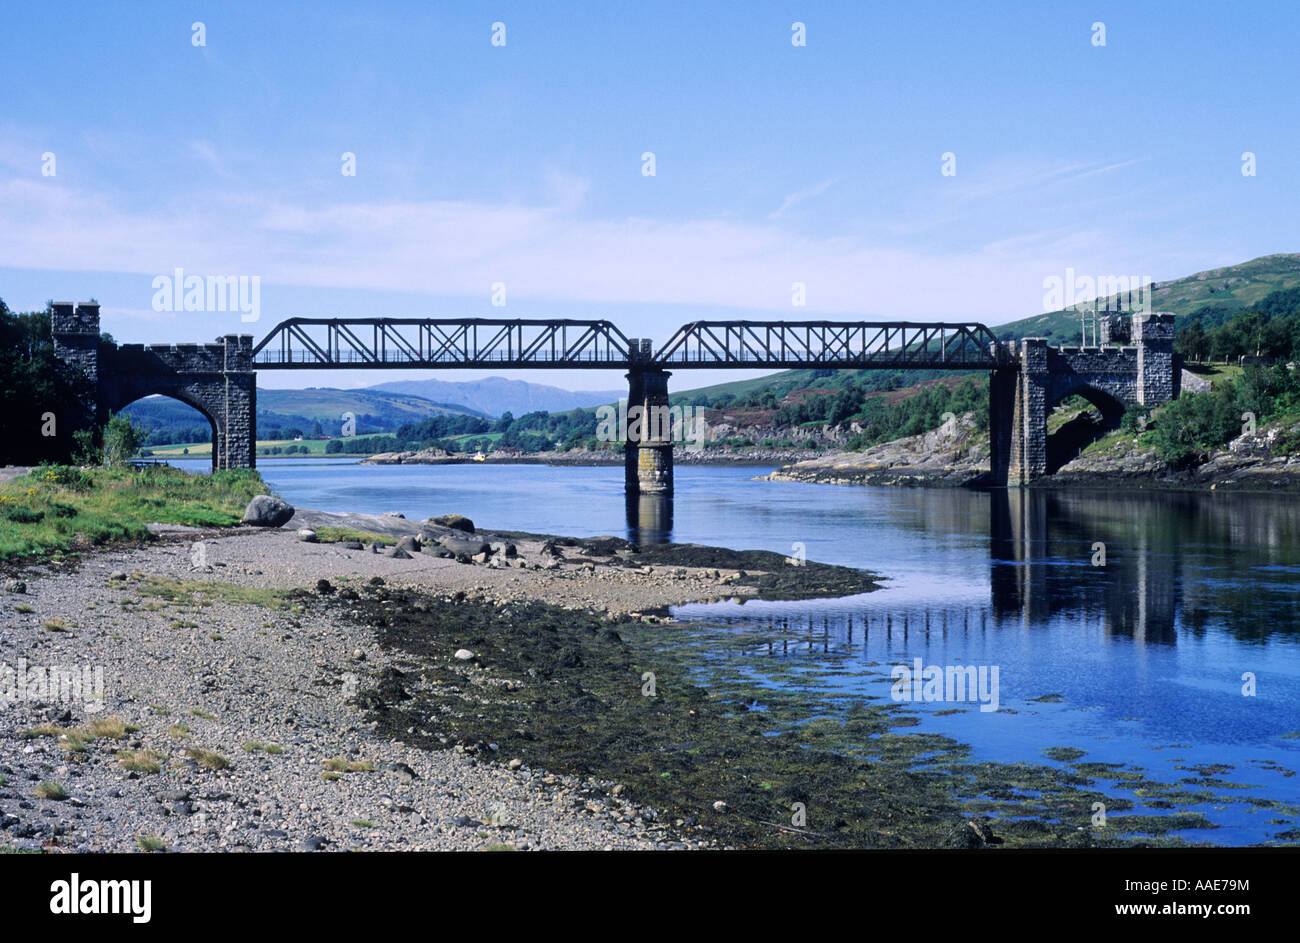 Loch Creran in disuso vittoriano ridondante ponte ferroviario, west, Scozia occidentale, UK, Stathclyde, viaggi, turismo, trasporti Foto Stock